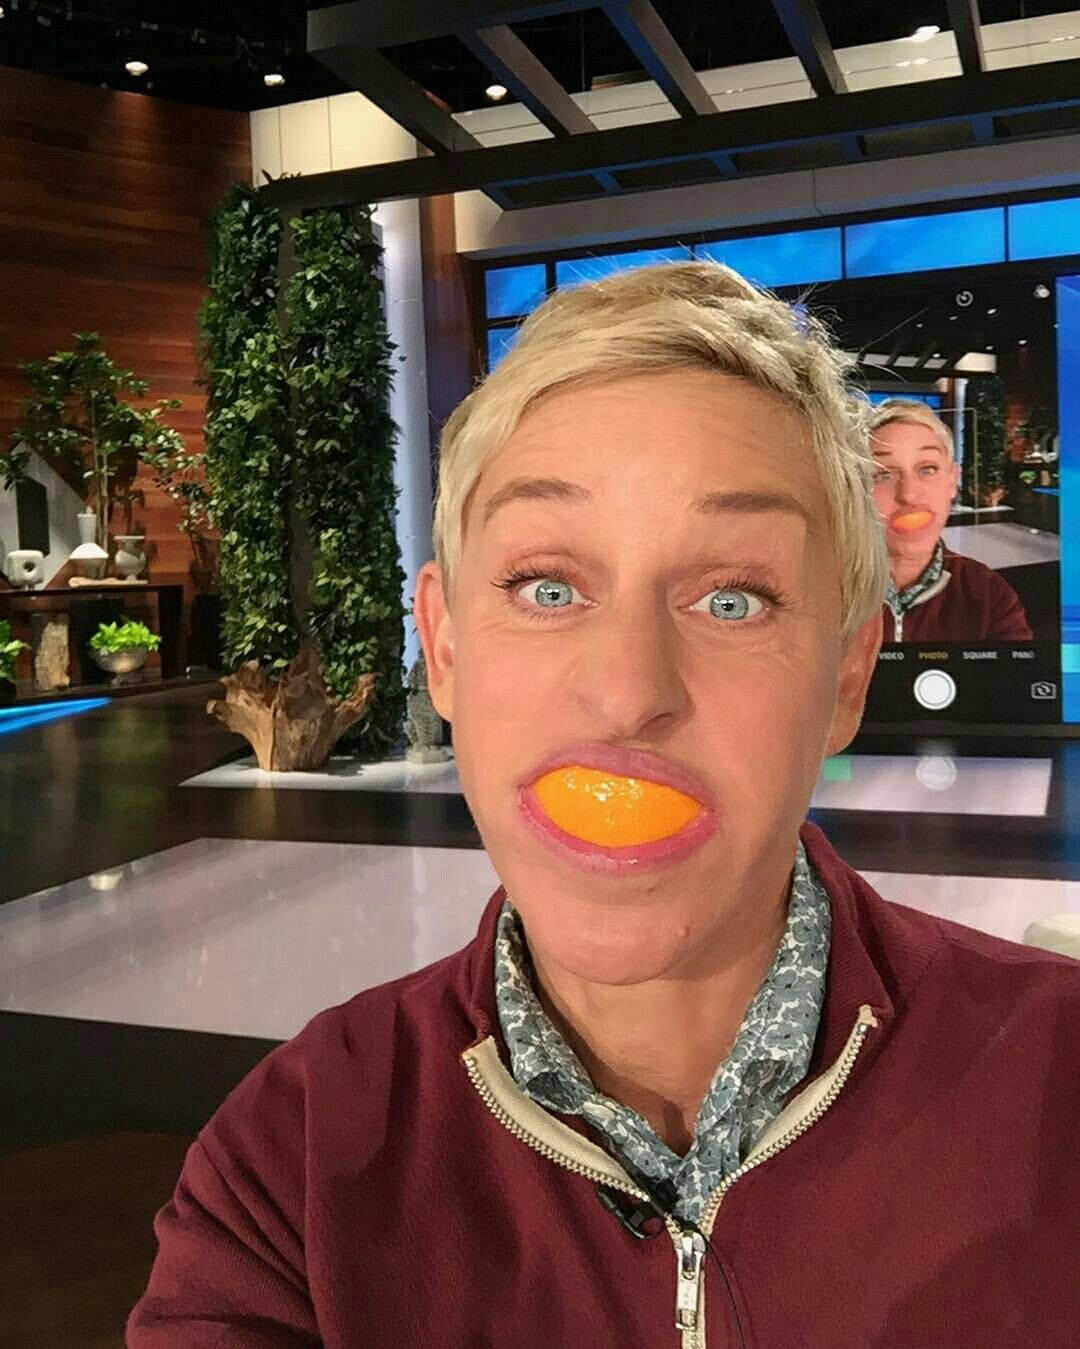 The Ellen Show Host Funny Selfie Wallpaper